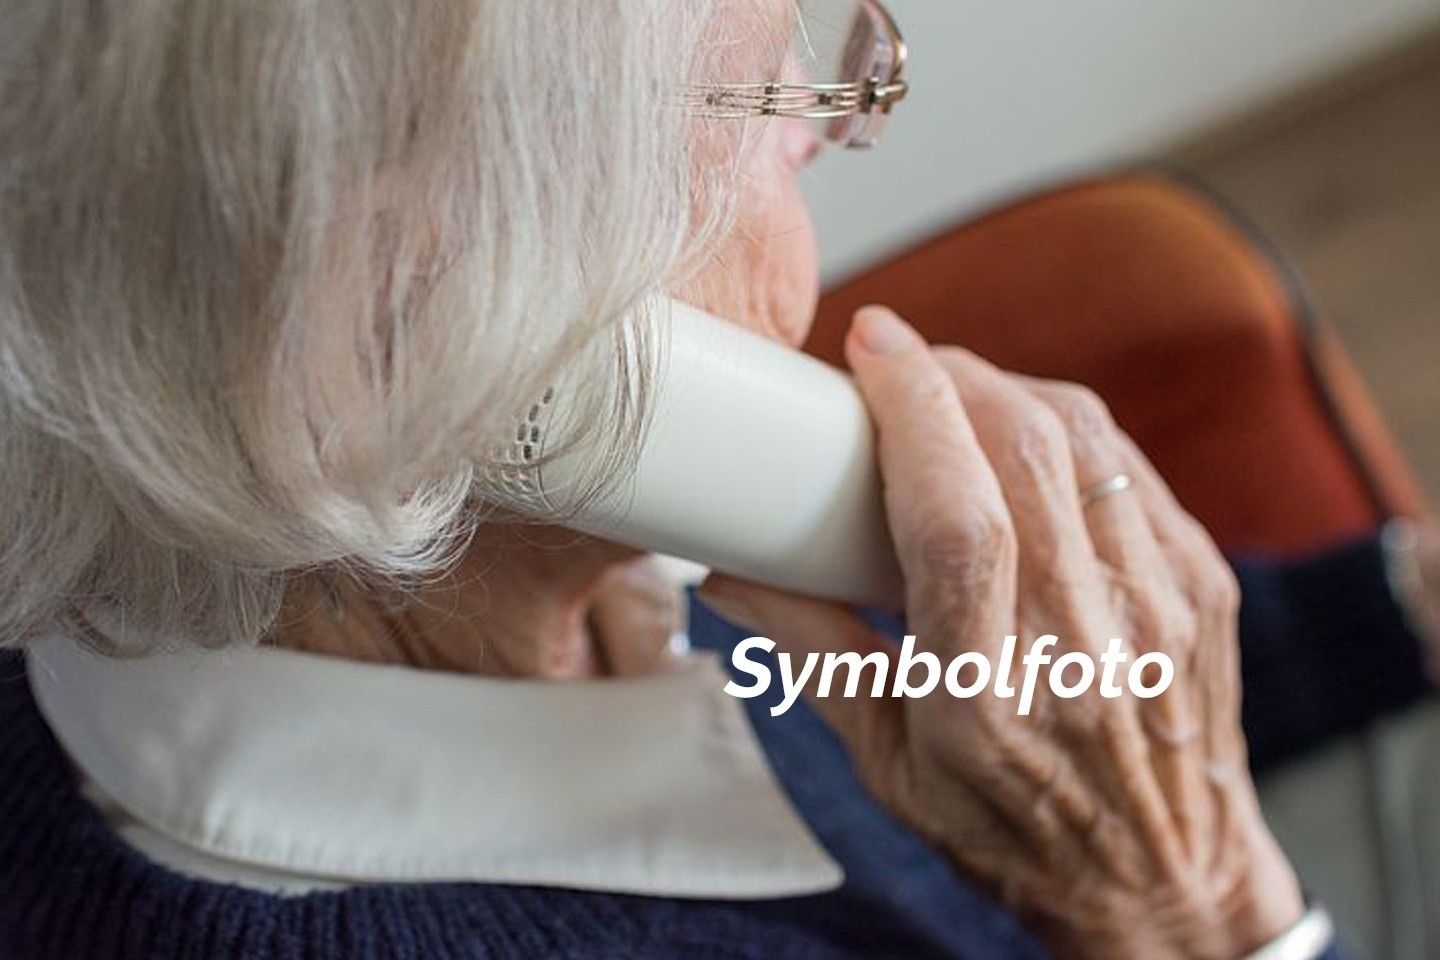 POL-HX: Betrüger im Kreis Höxter - Warnung vor Schockanrufen Symbolfoto Pixabay Seniorin beim telefonieren